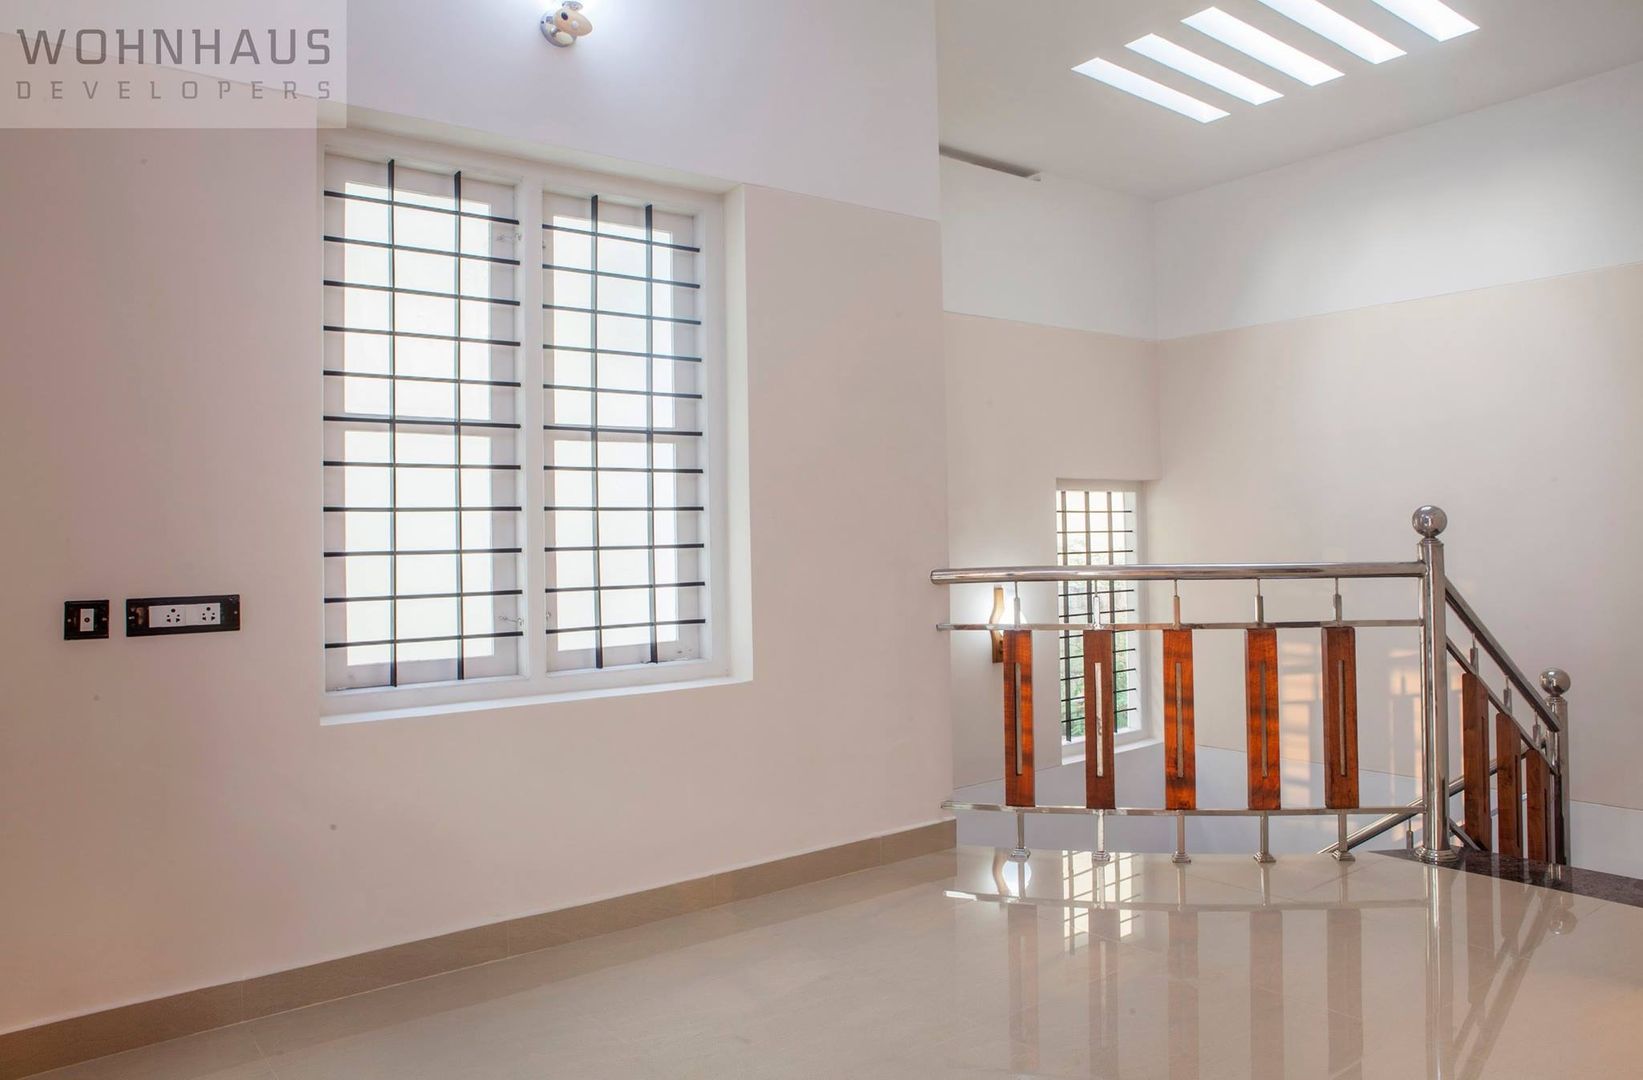 1400sqft House in Trivandrum, Wohnhaus Developers Wohnhaus Developers モダンスタイルの 玄関&廊下&階段 セラミック